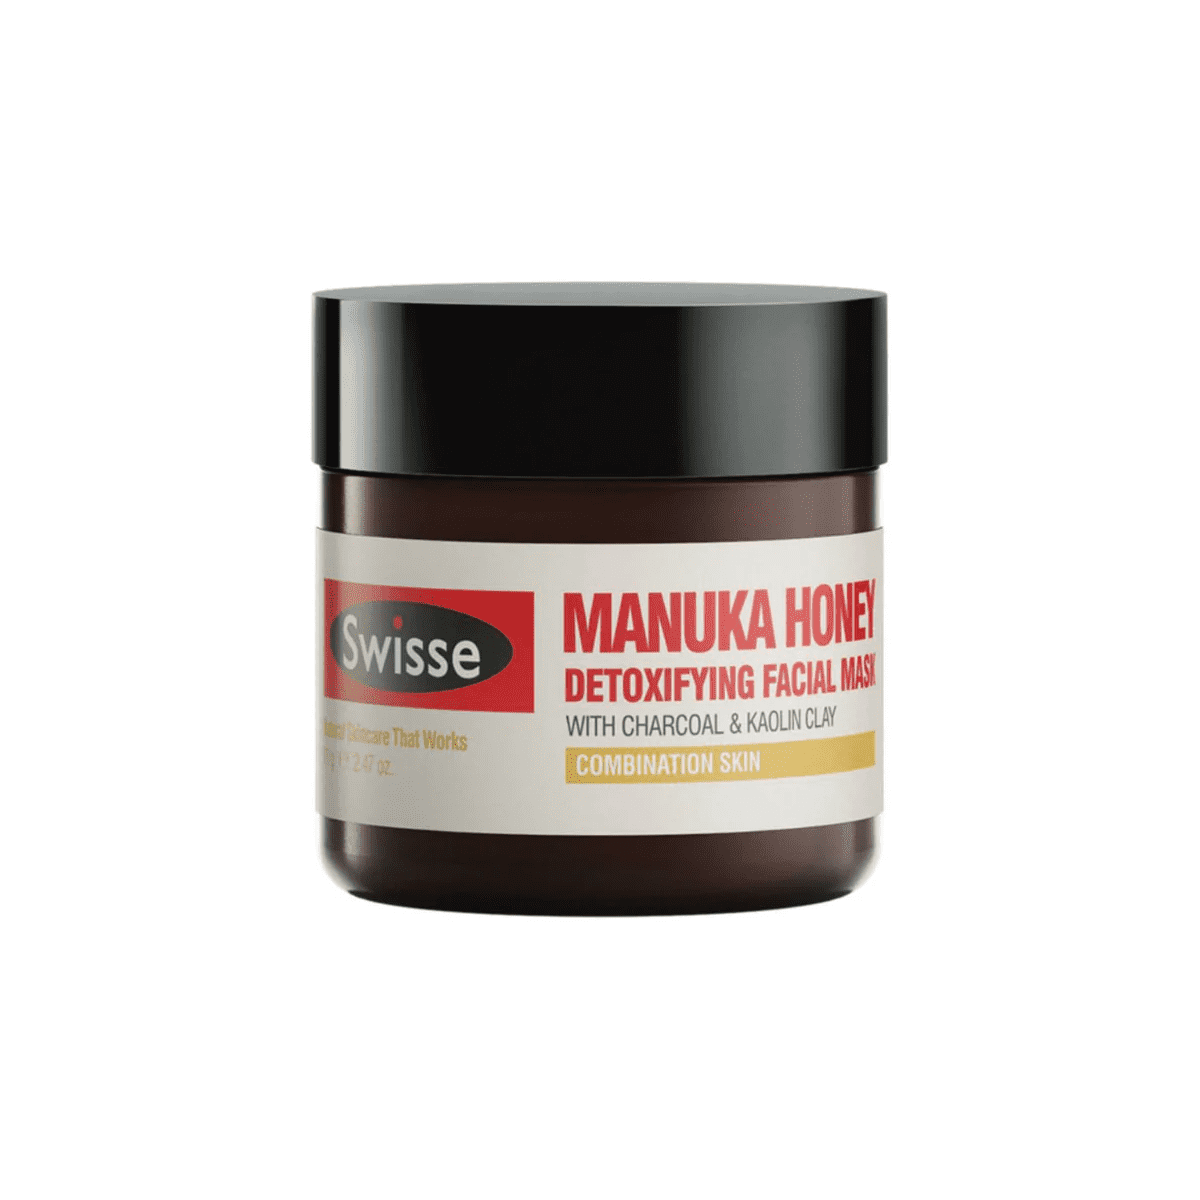 Swisse Manuka Honey Detoxifying Facial Mask 70g.